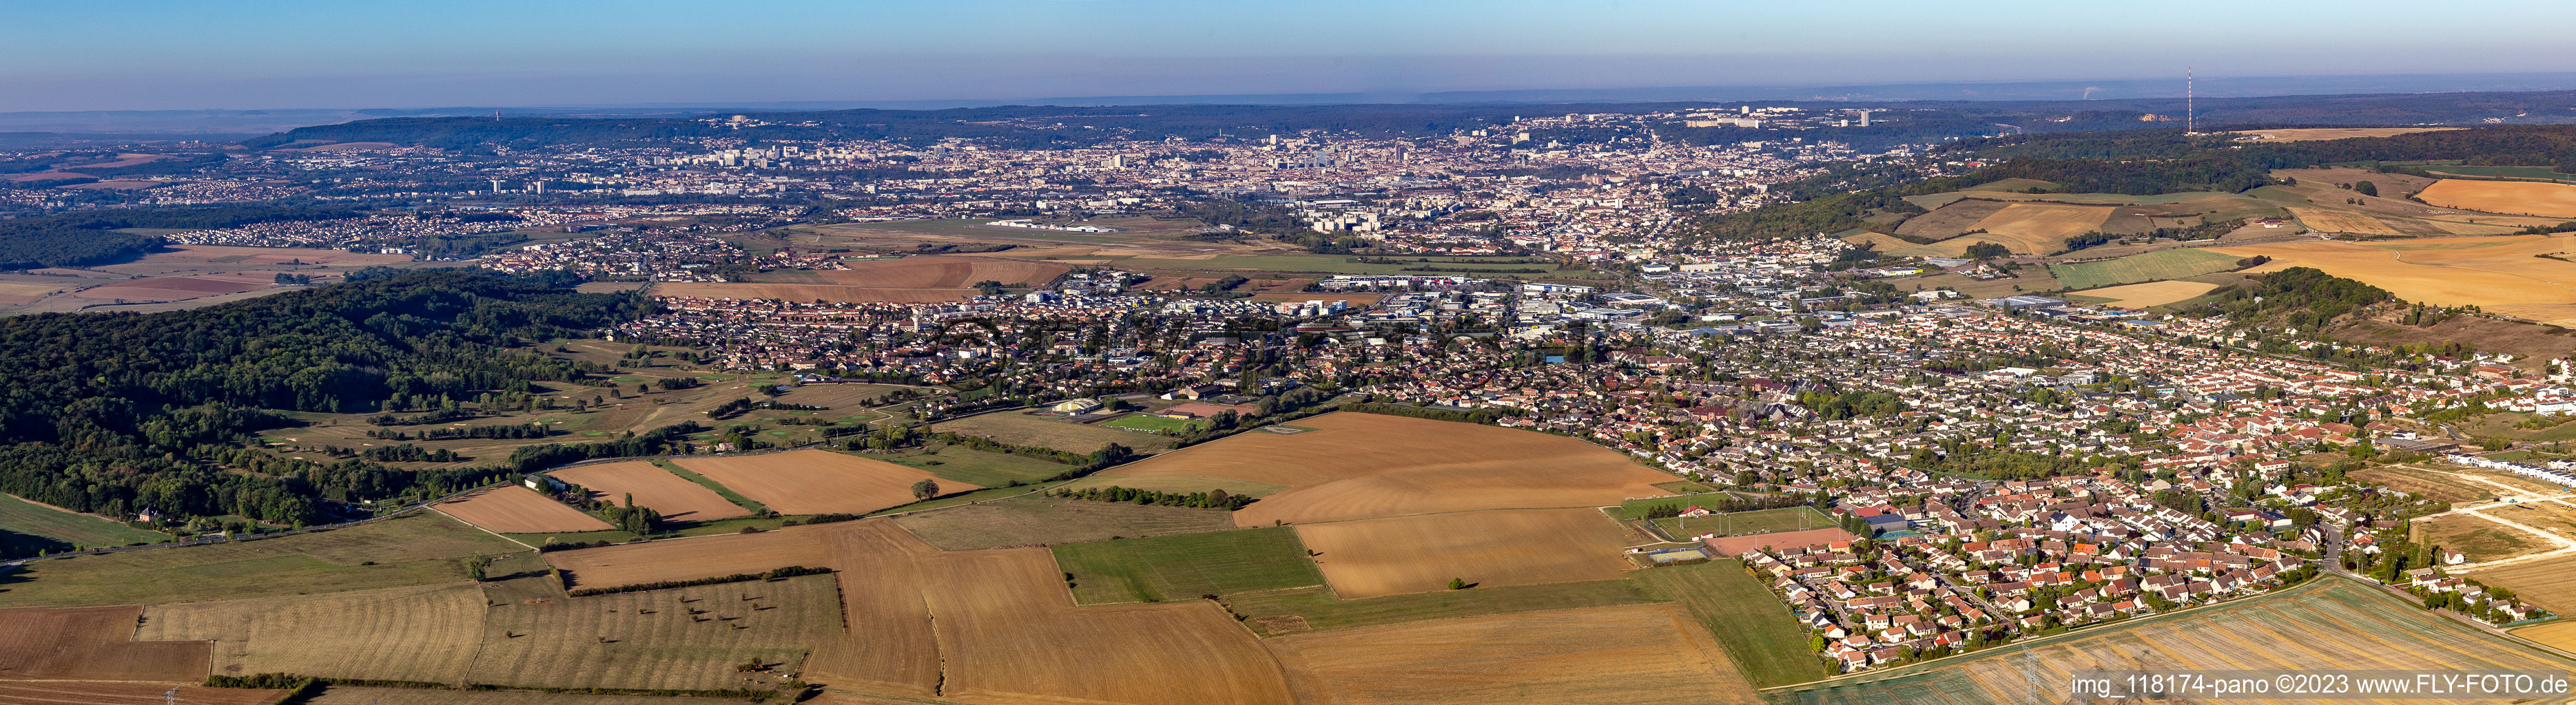 Luftaufnahme von Panoramaperspektive des Stadtgebiet mit Außenbezirken und Innenstadtbereich in Nancy in Grand Est im Bundesland Meurthe-et-Moselle, Frankreich